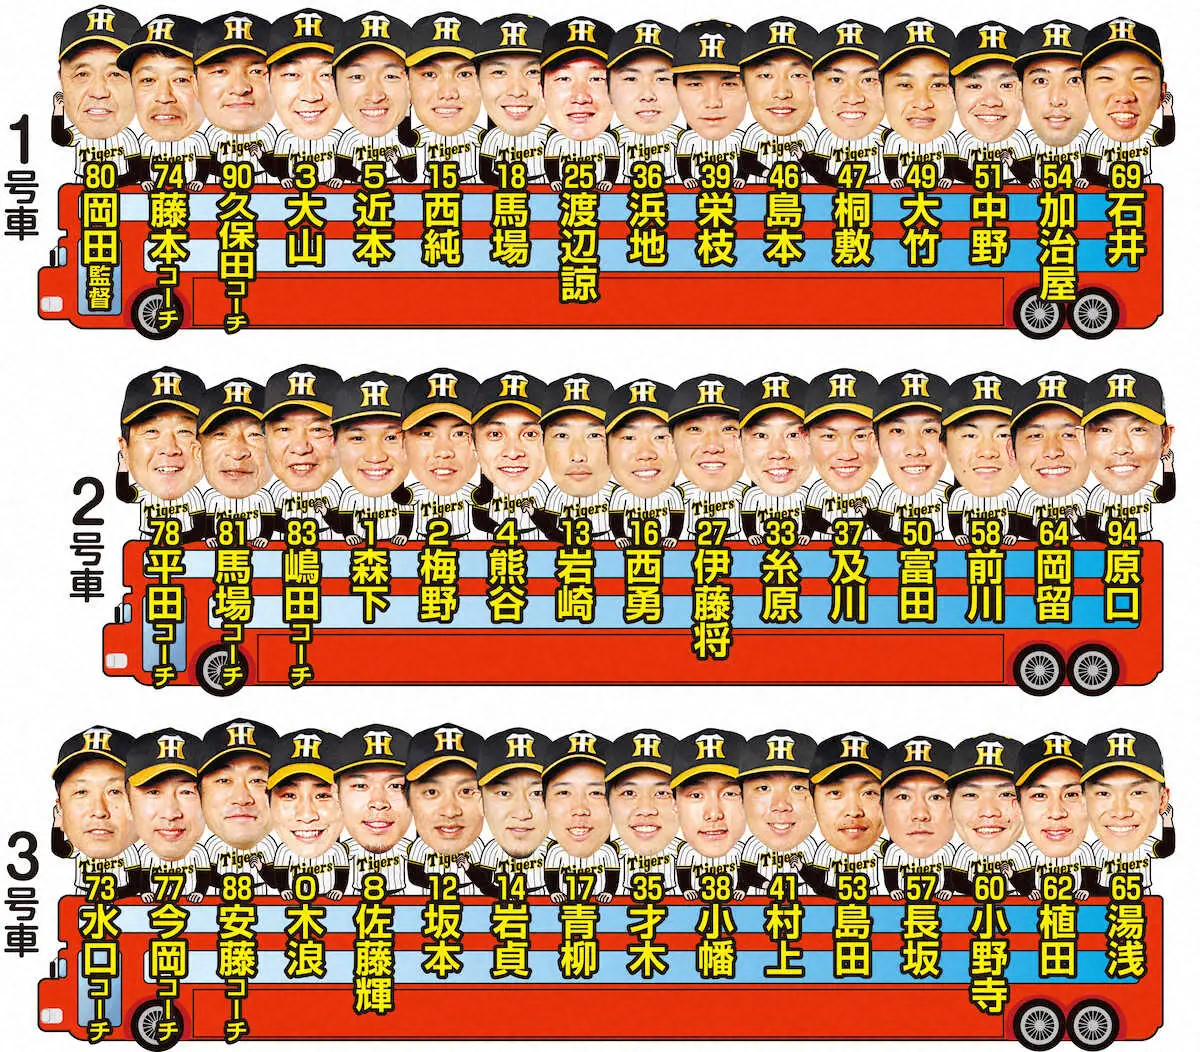 さあVパレード！！阪神選手が神戸・三宮会場でバスに乗り込み始める